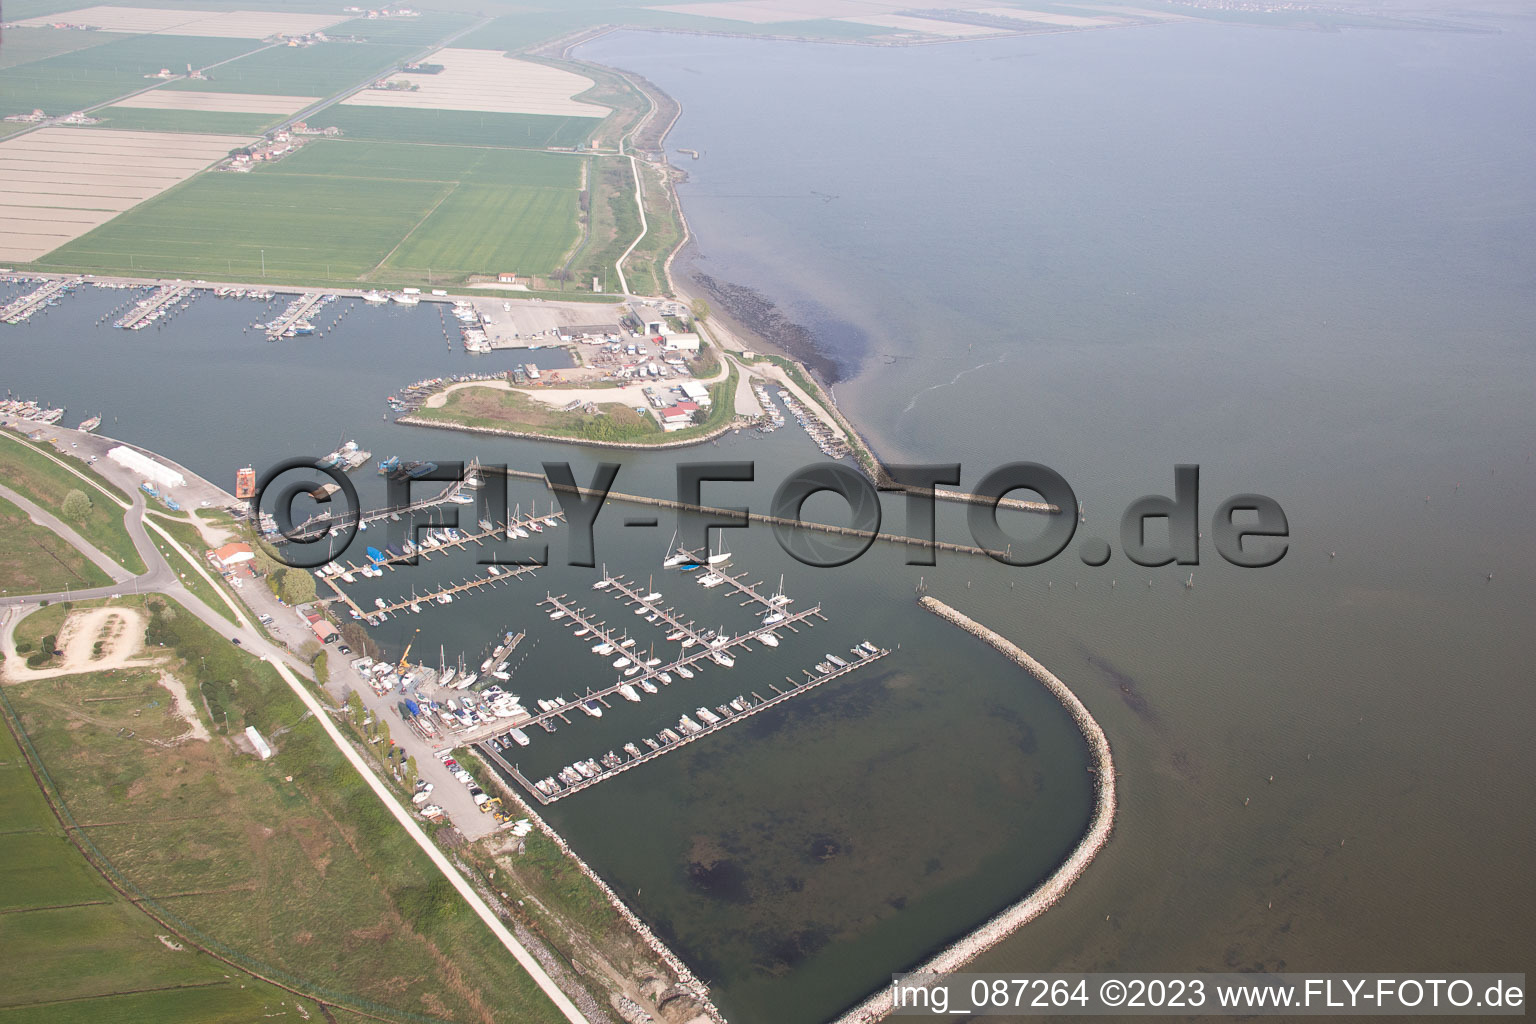 Luftbild von Yachthafen mit Sportboot- Anlegestellen und Bootsliegeplätzen am Uferbereich der Adria in Goro in Emilia-Romagna, Italien